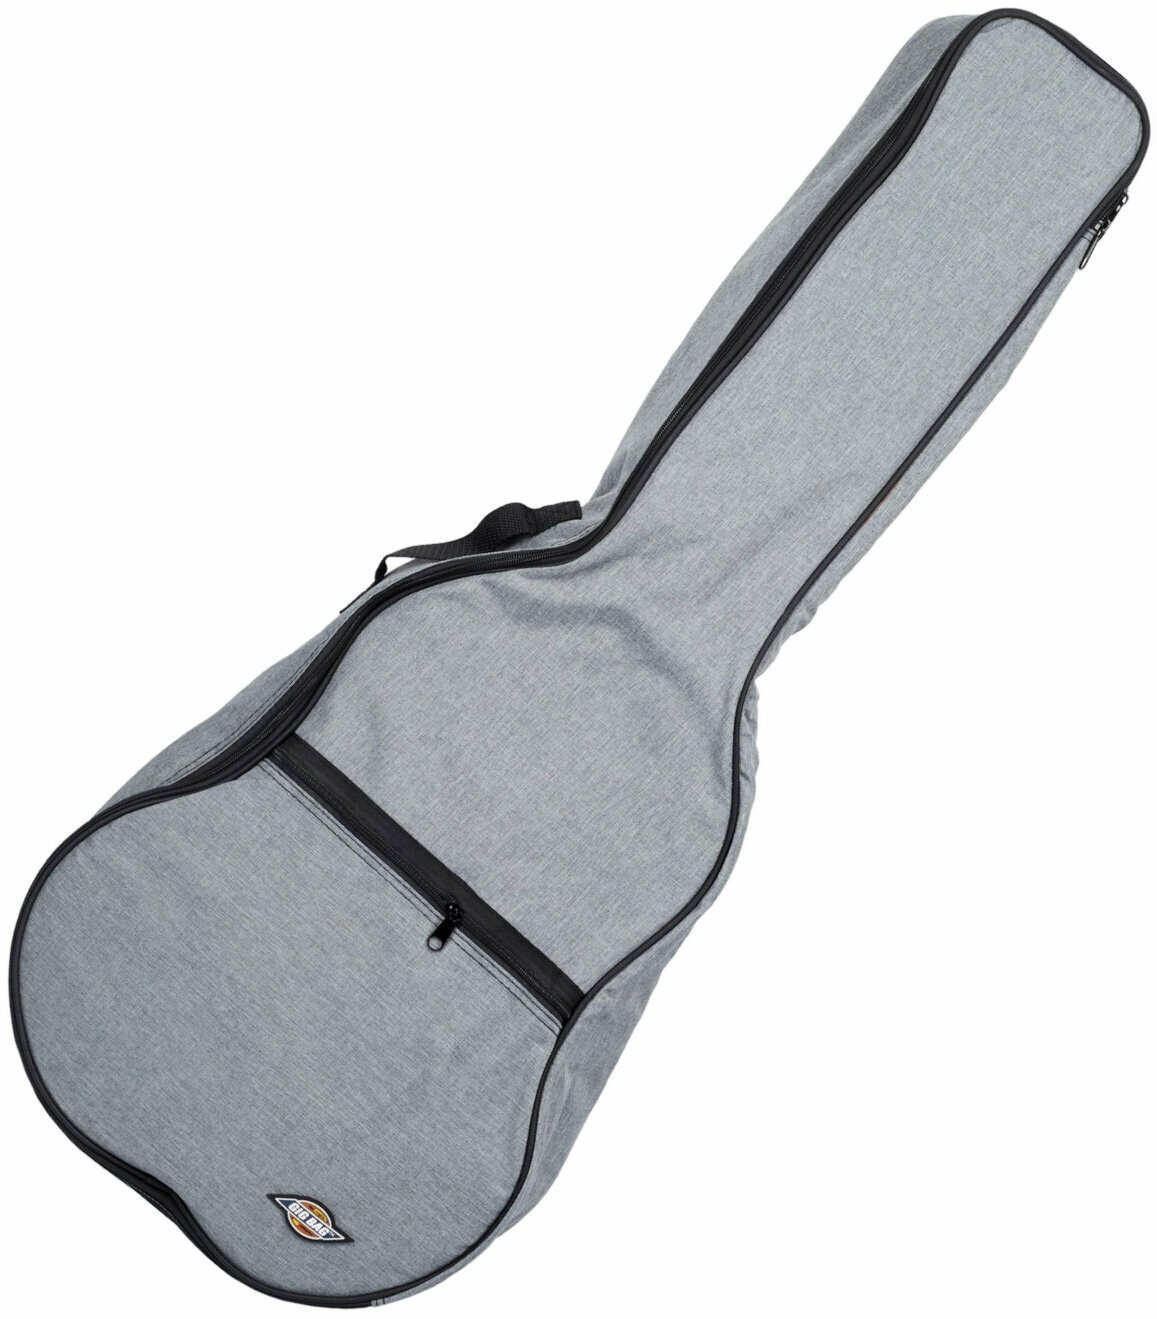 Tasche für Konzertgitarre, Gigbag für Konzertgitarre Tanglewood 3/4 CC BG Tasche für Konzertgitarre, Gigbag für Konzertgitarre Grey